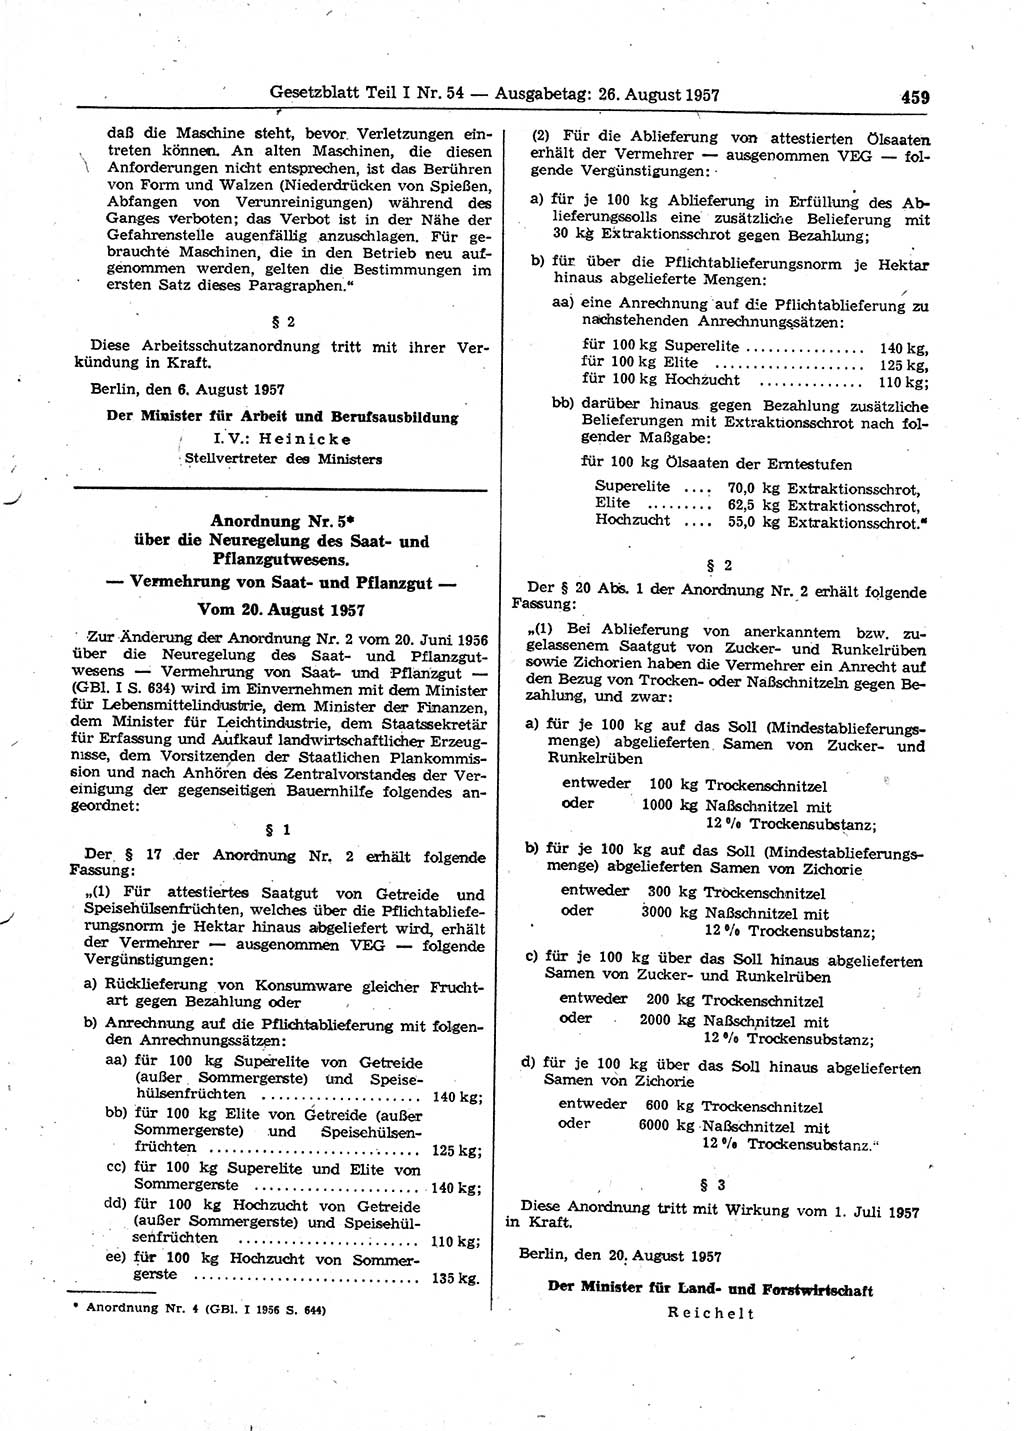 Gesetzblatt (GBl.) der Deutschen Demokratischen Republik (DDR) Teil Ⅰ 1957, Seite 459 (GBl. DDR Ⅰ 1957, S. 459)